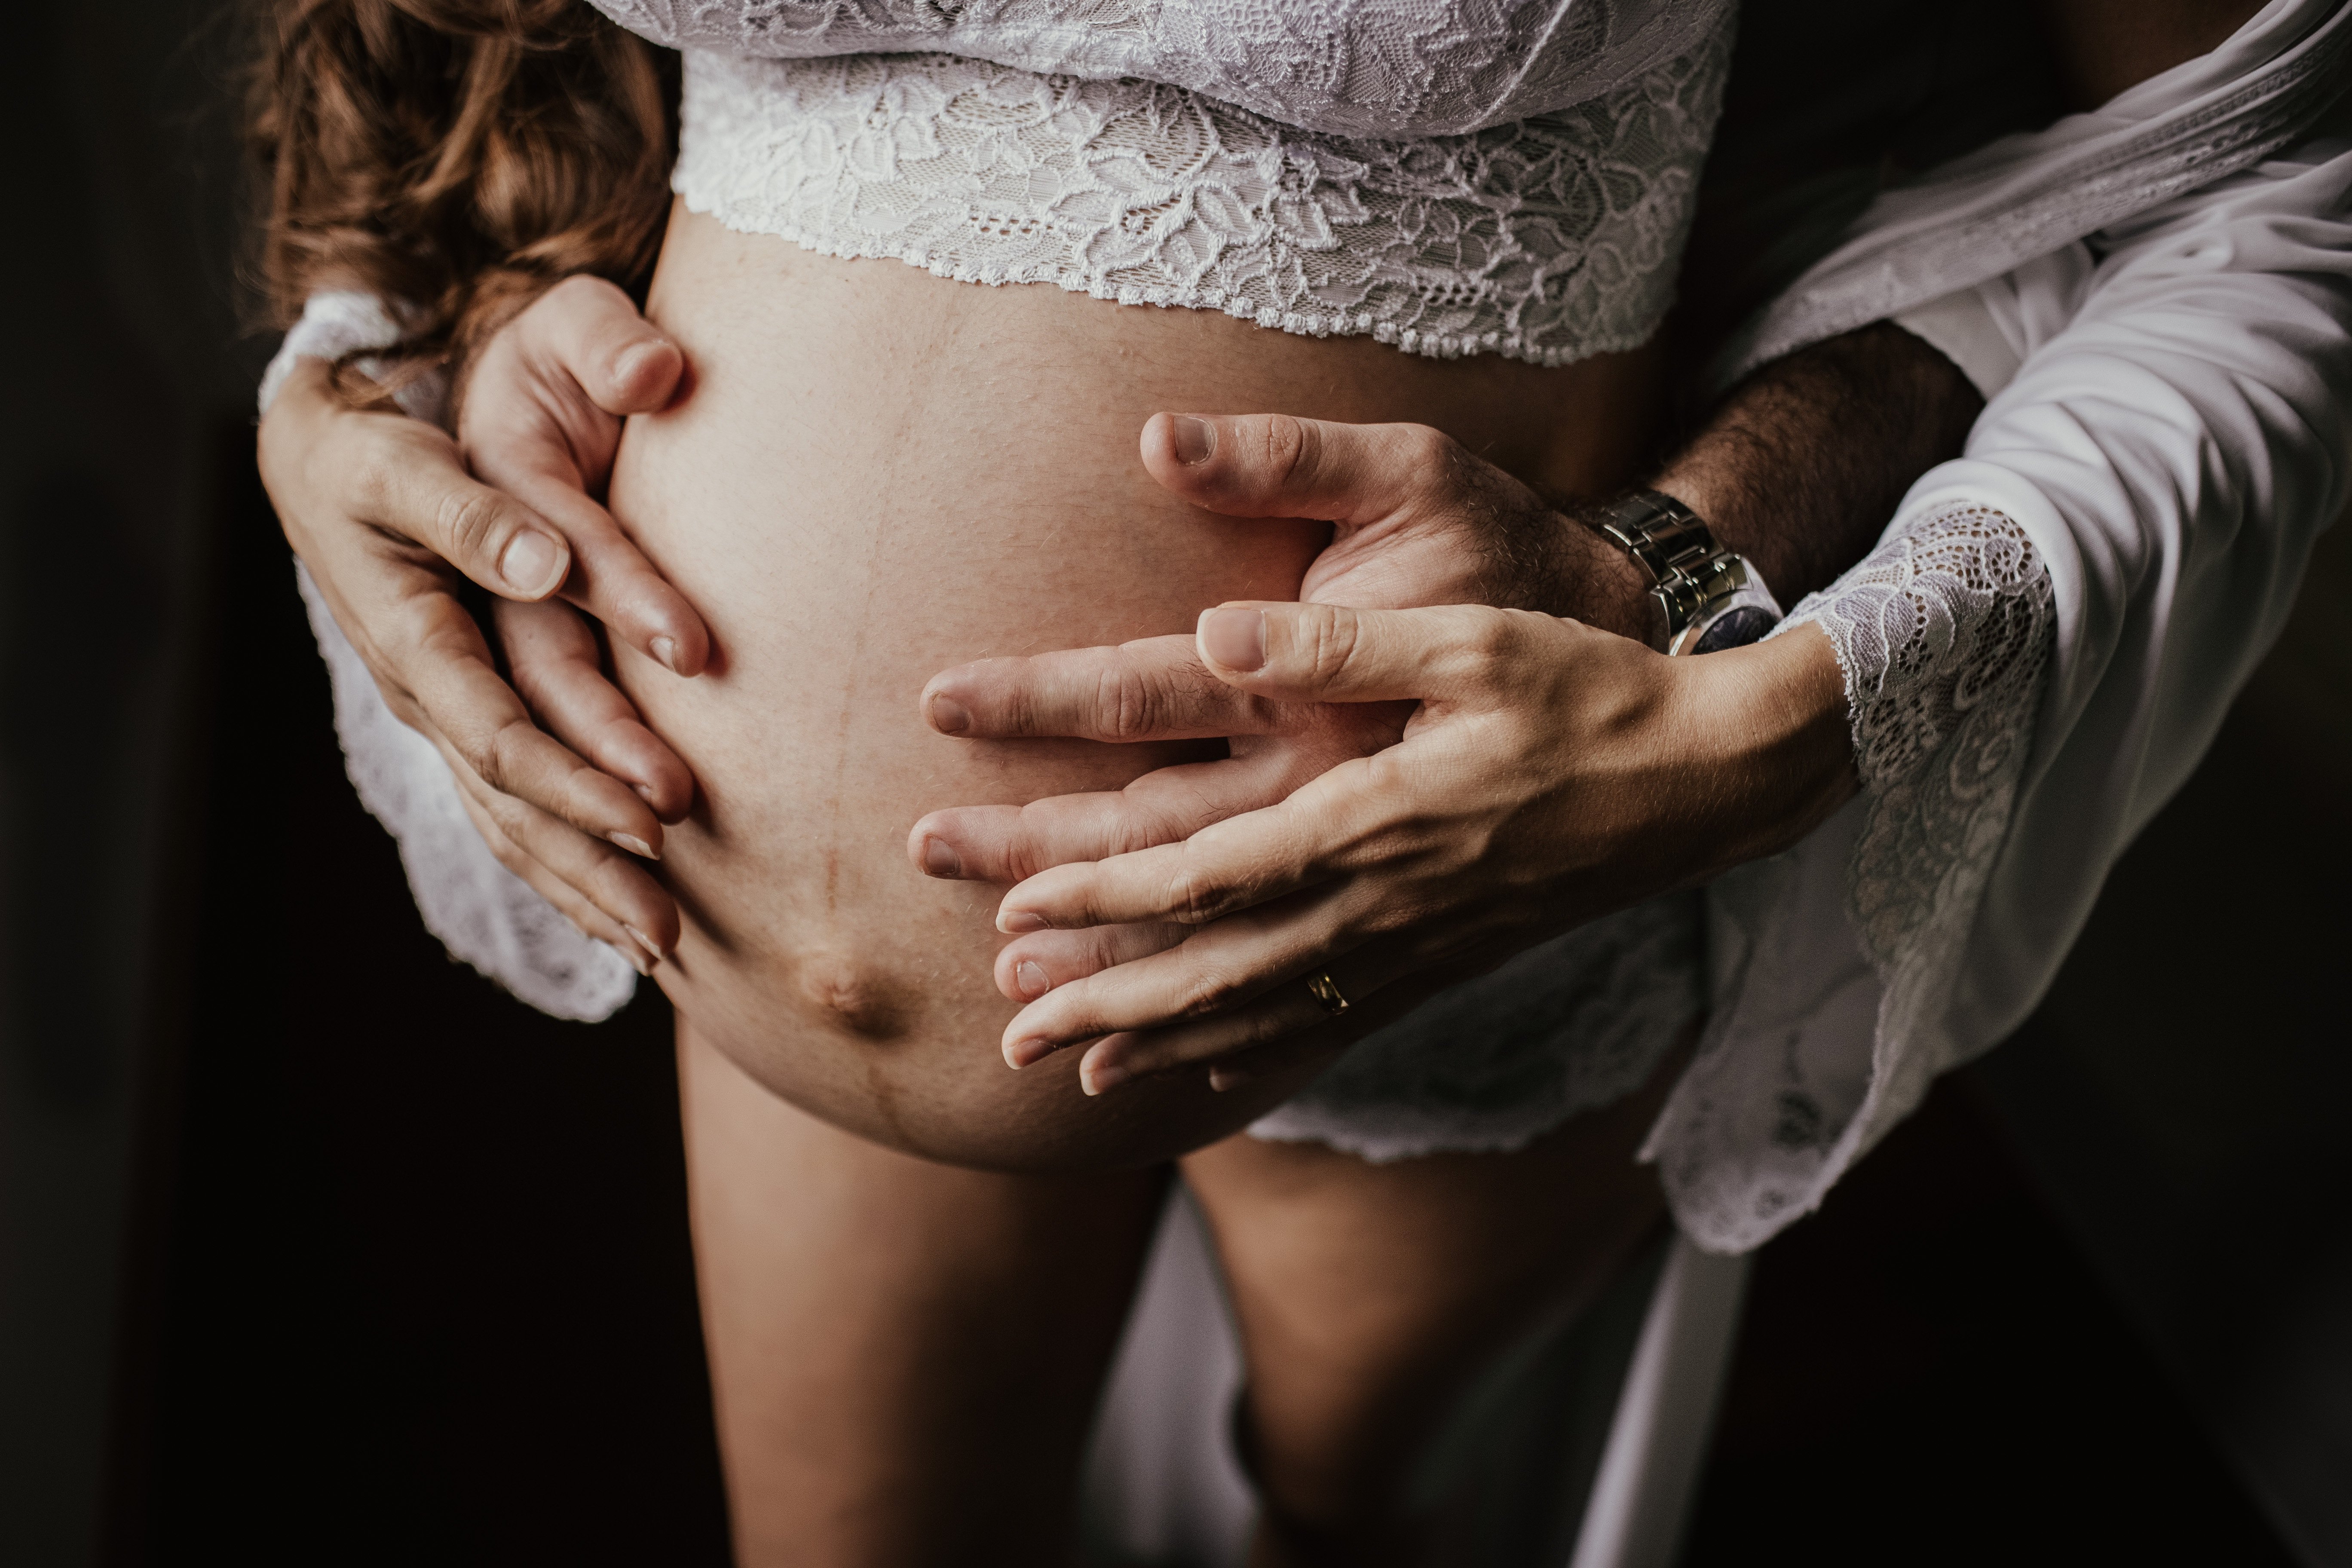 Το οίδημα, κοινώς πρήξιμο, στα χέρια, πόδια και αστραγάλους είναι πολύ συχνό φαινόμενο (ειδικά κατά τη διάρκεια του καλοκαιριού) της εγκυμοσύνης. Μετά της εικοστή εβδομάδα, μπορεί να συμβεί στο λαιμό και το πρόσωπο.